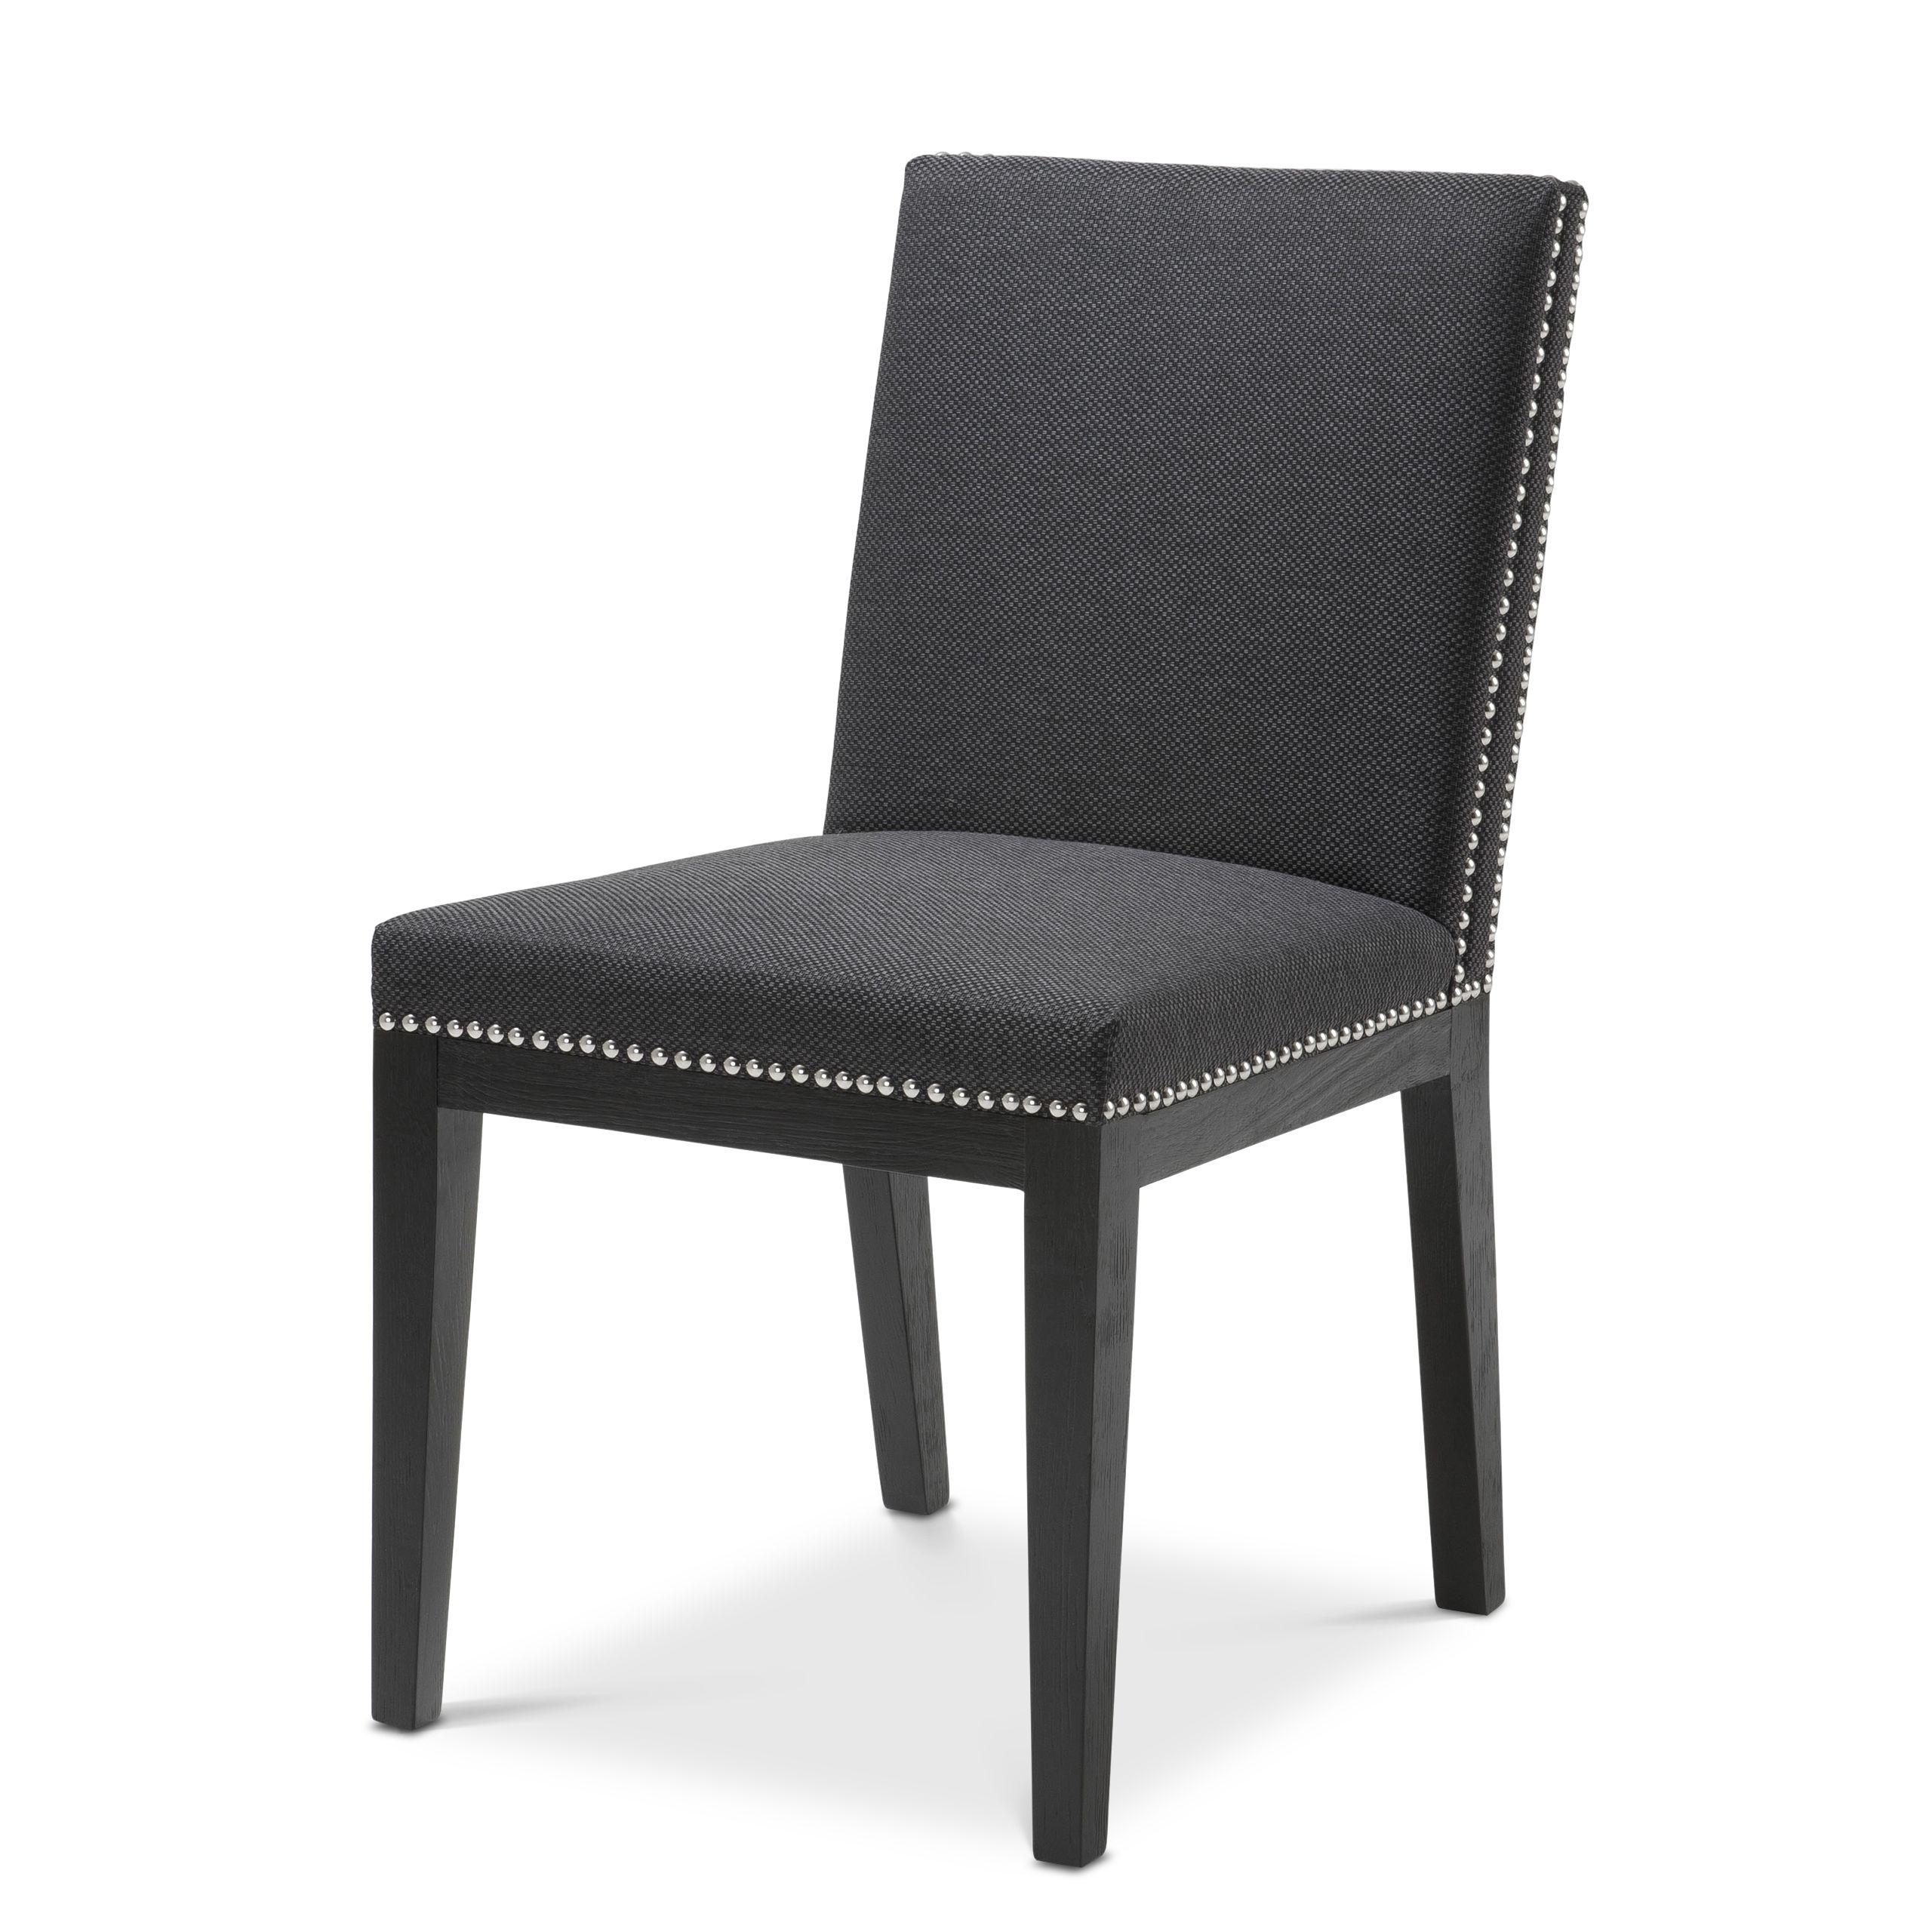 Купить Стул без подлокотника Dining Chair Marlowe в интернет-магазине roooms.ru